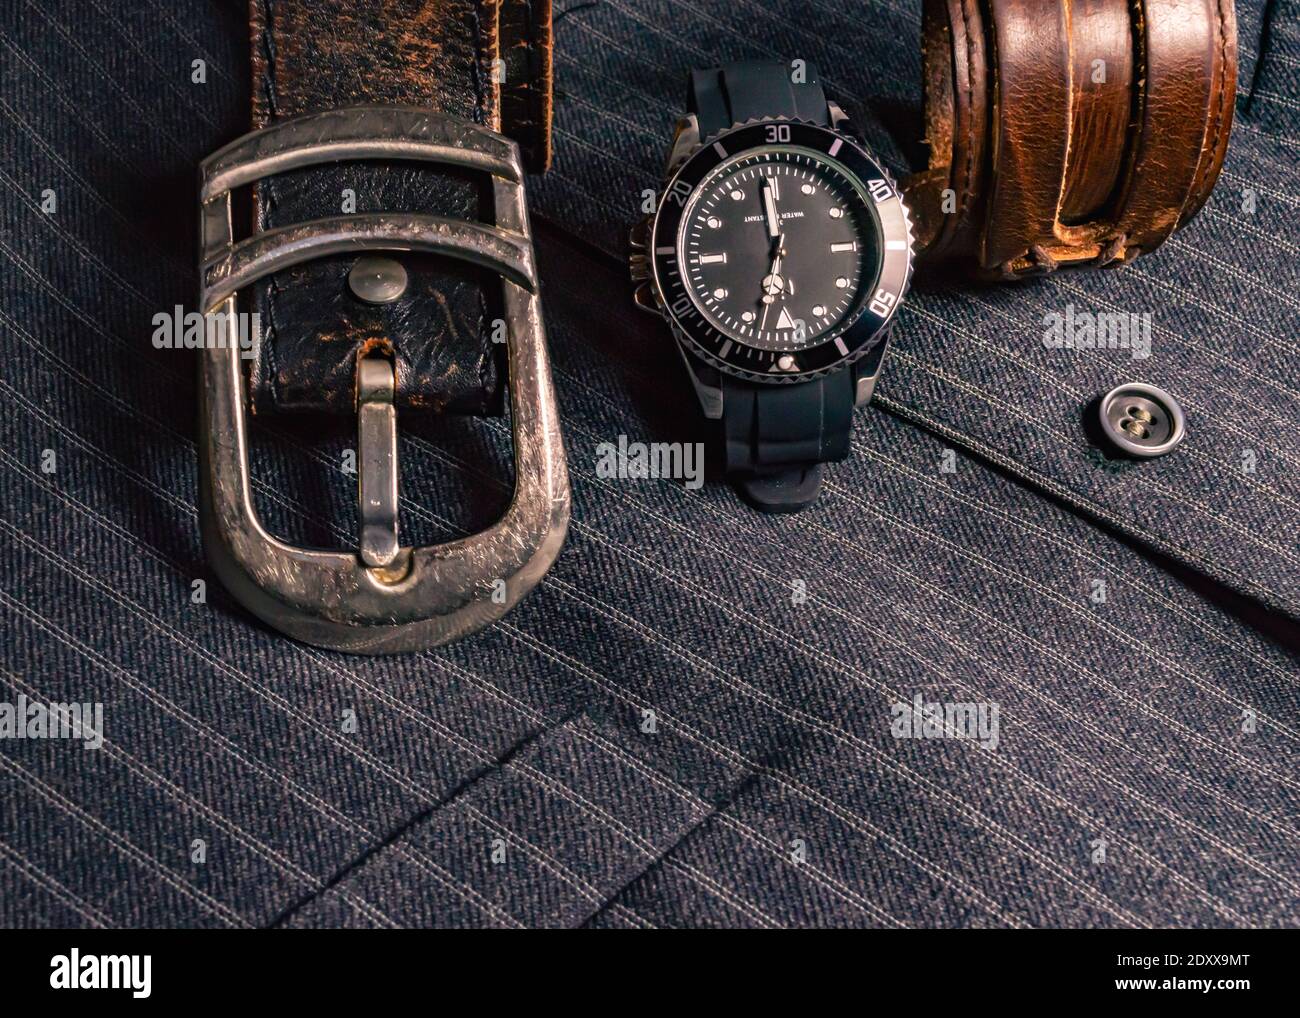 Abbildung eines Ledergürtels, einer Uhr in Schwarz und Chrom und einem Lederarmband auf einer grau gestreiften Weste Stockfoto